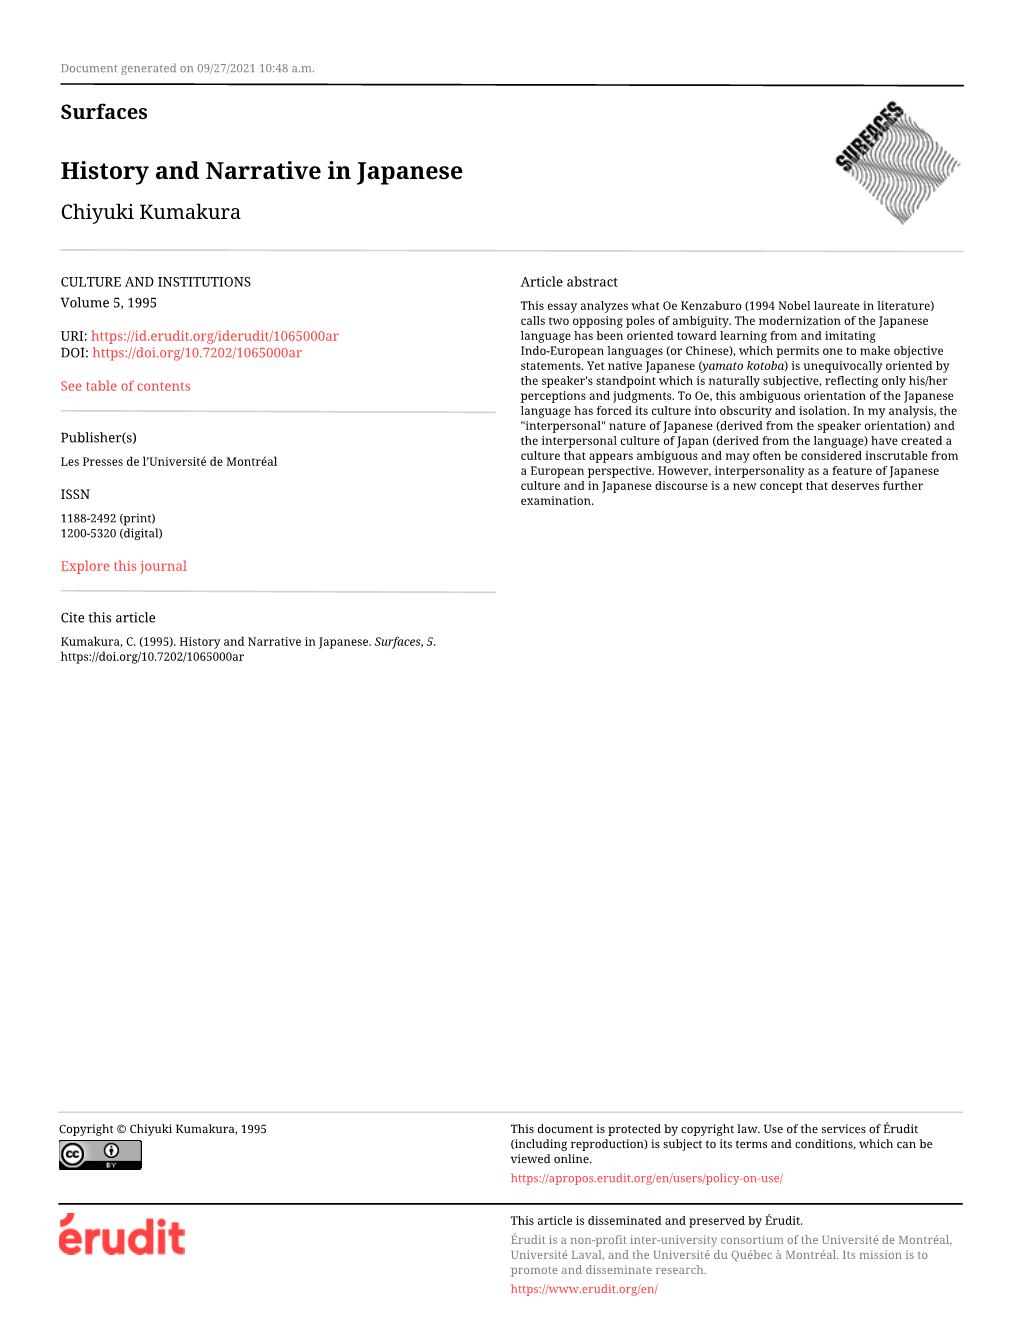 History and Narrative in Japanese Chiyuki Kumakura